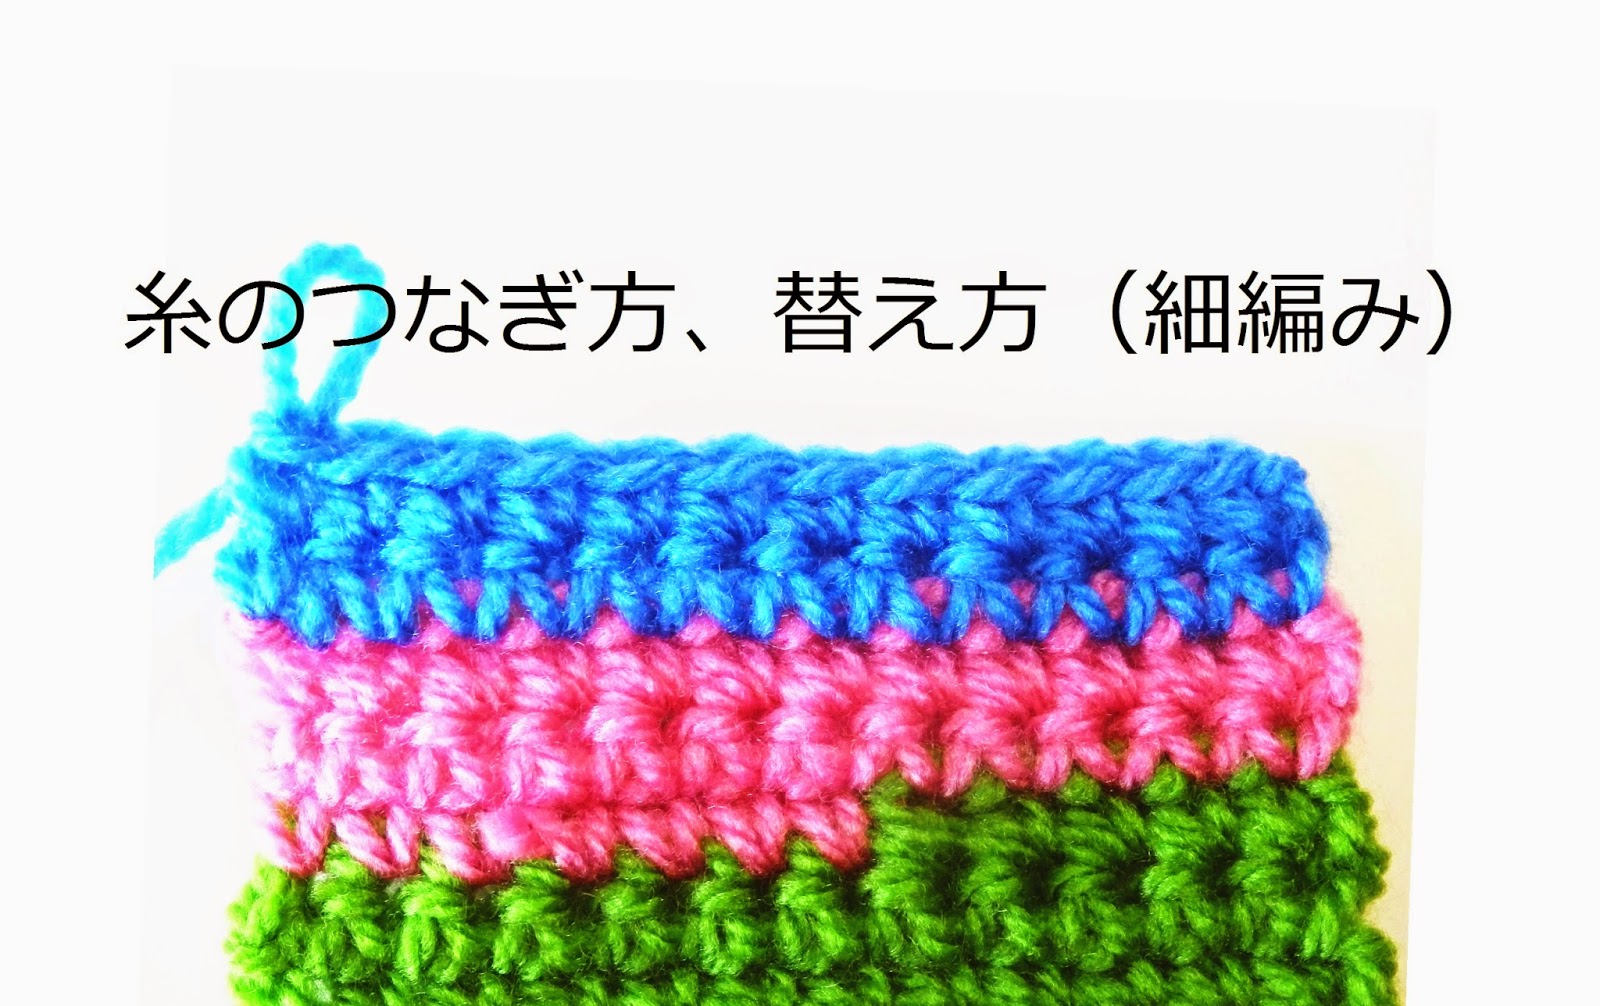 かぎ編み教室 クロッシェ ジャパン Crochet Japan ブログ 編み途中で糸を足す 糸を替える方法